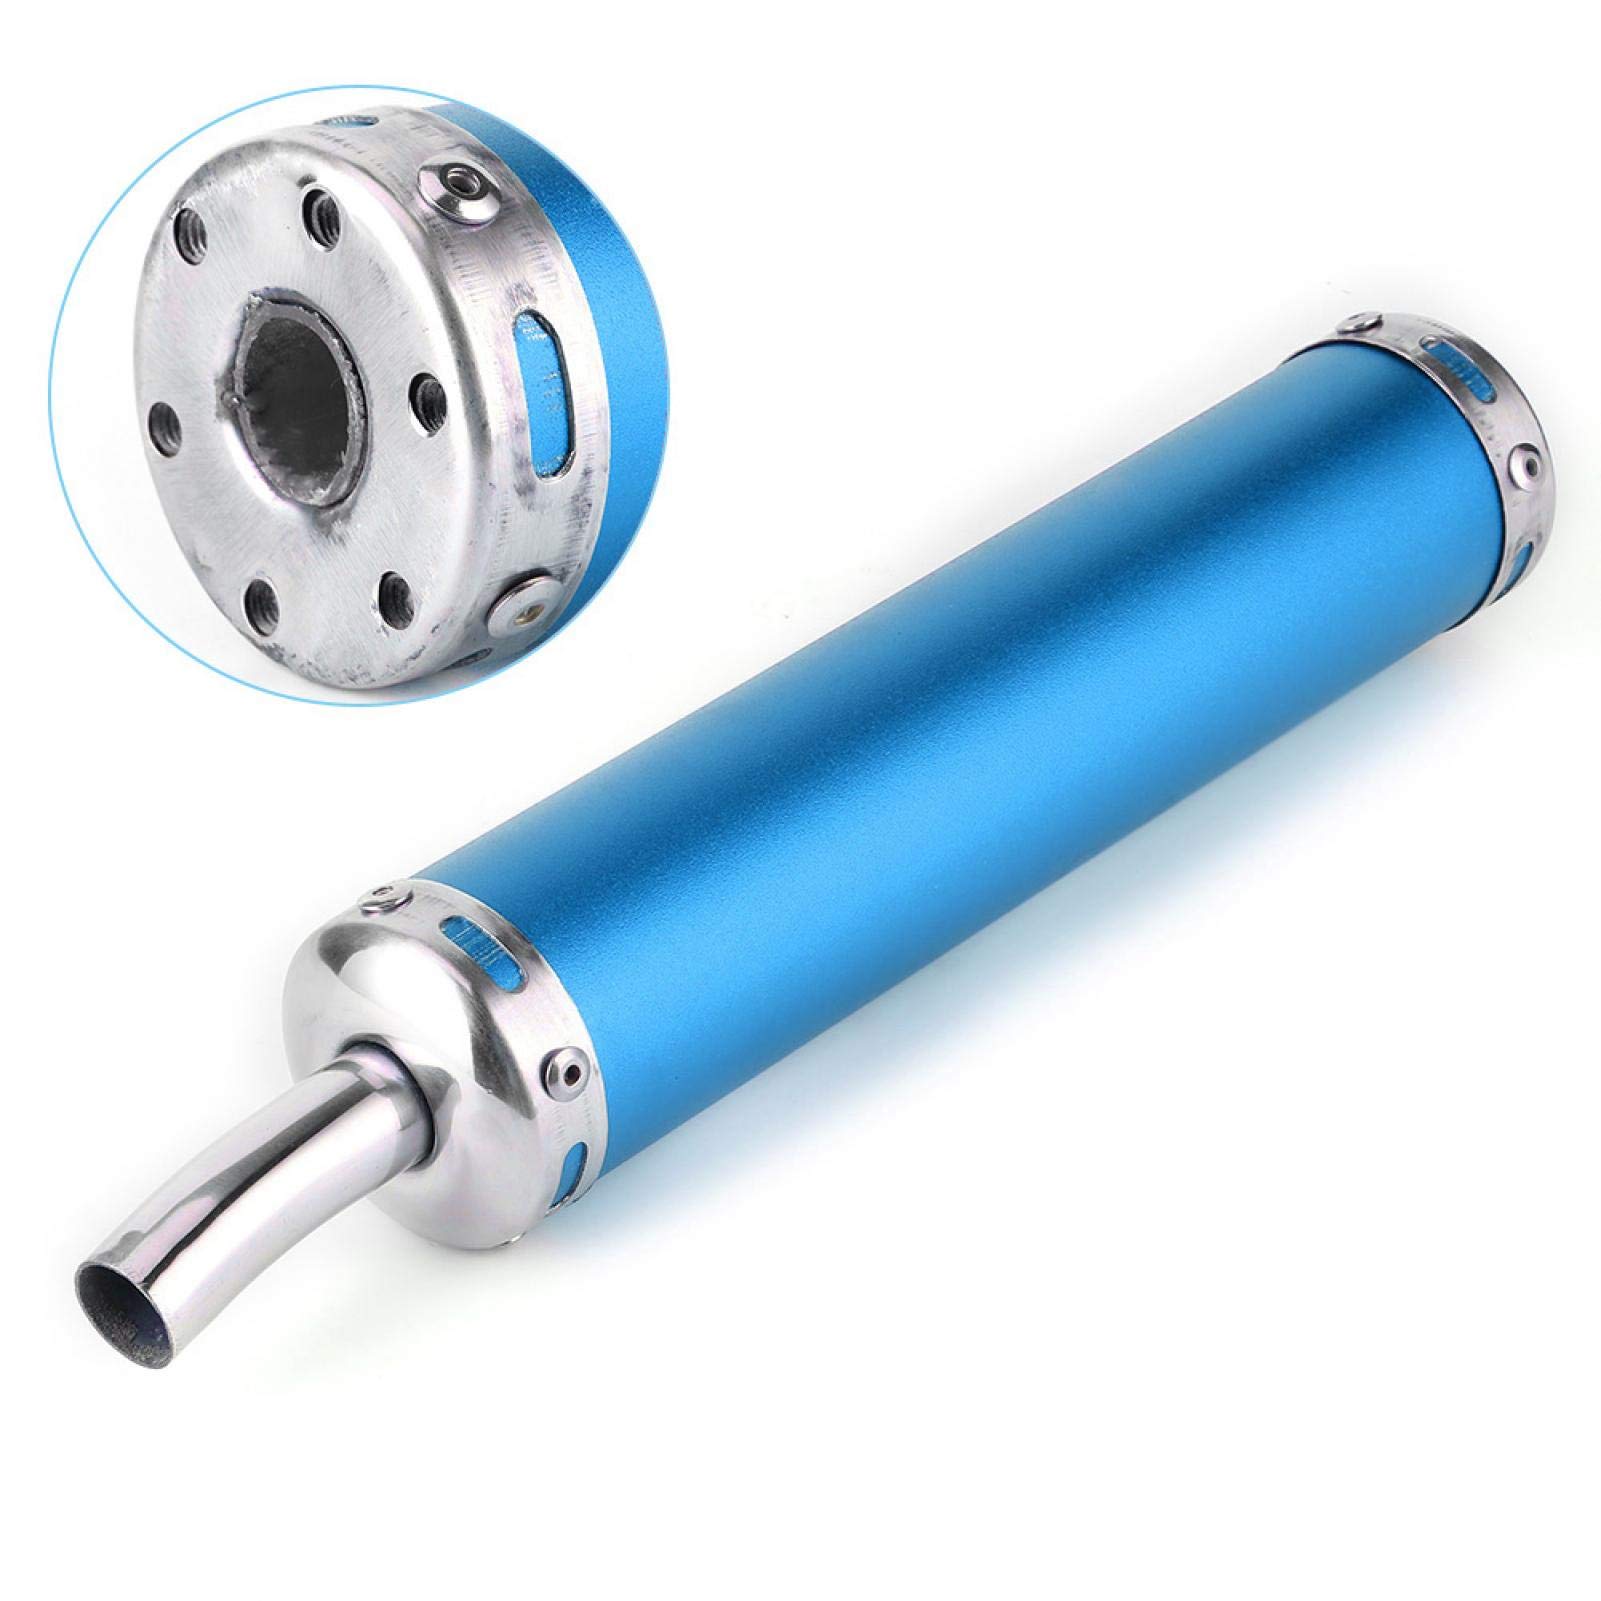 Motorrad-Auspuff, 20 mm (0,8 Zoll) modifizierte Teile Edelstahl-Schalldämpfer aus Universalstahl Glaspackung Fiberglas-Schalldämpfer Resonator für 2-Ta otorrad(Blau) von Fydun